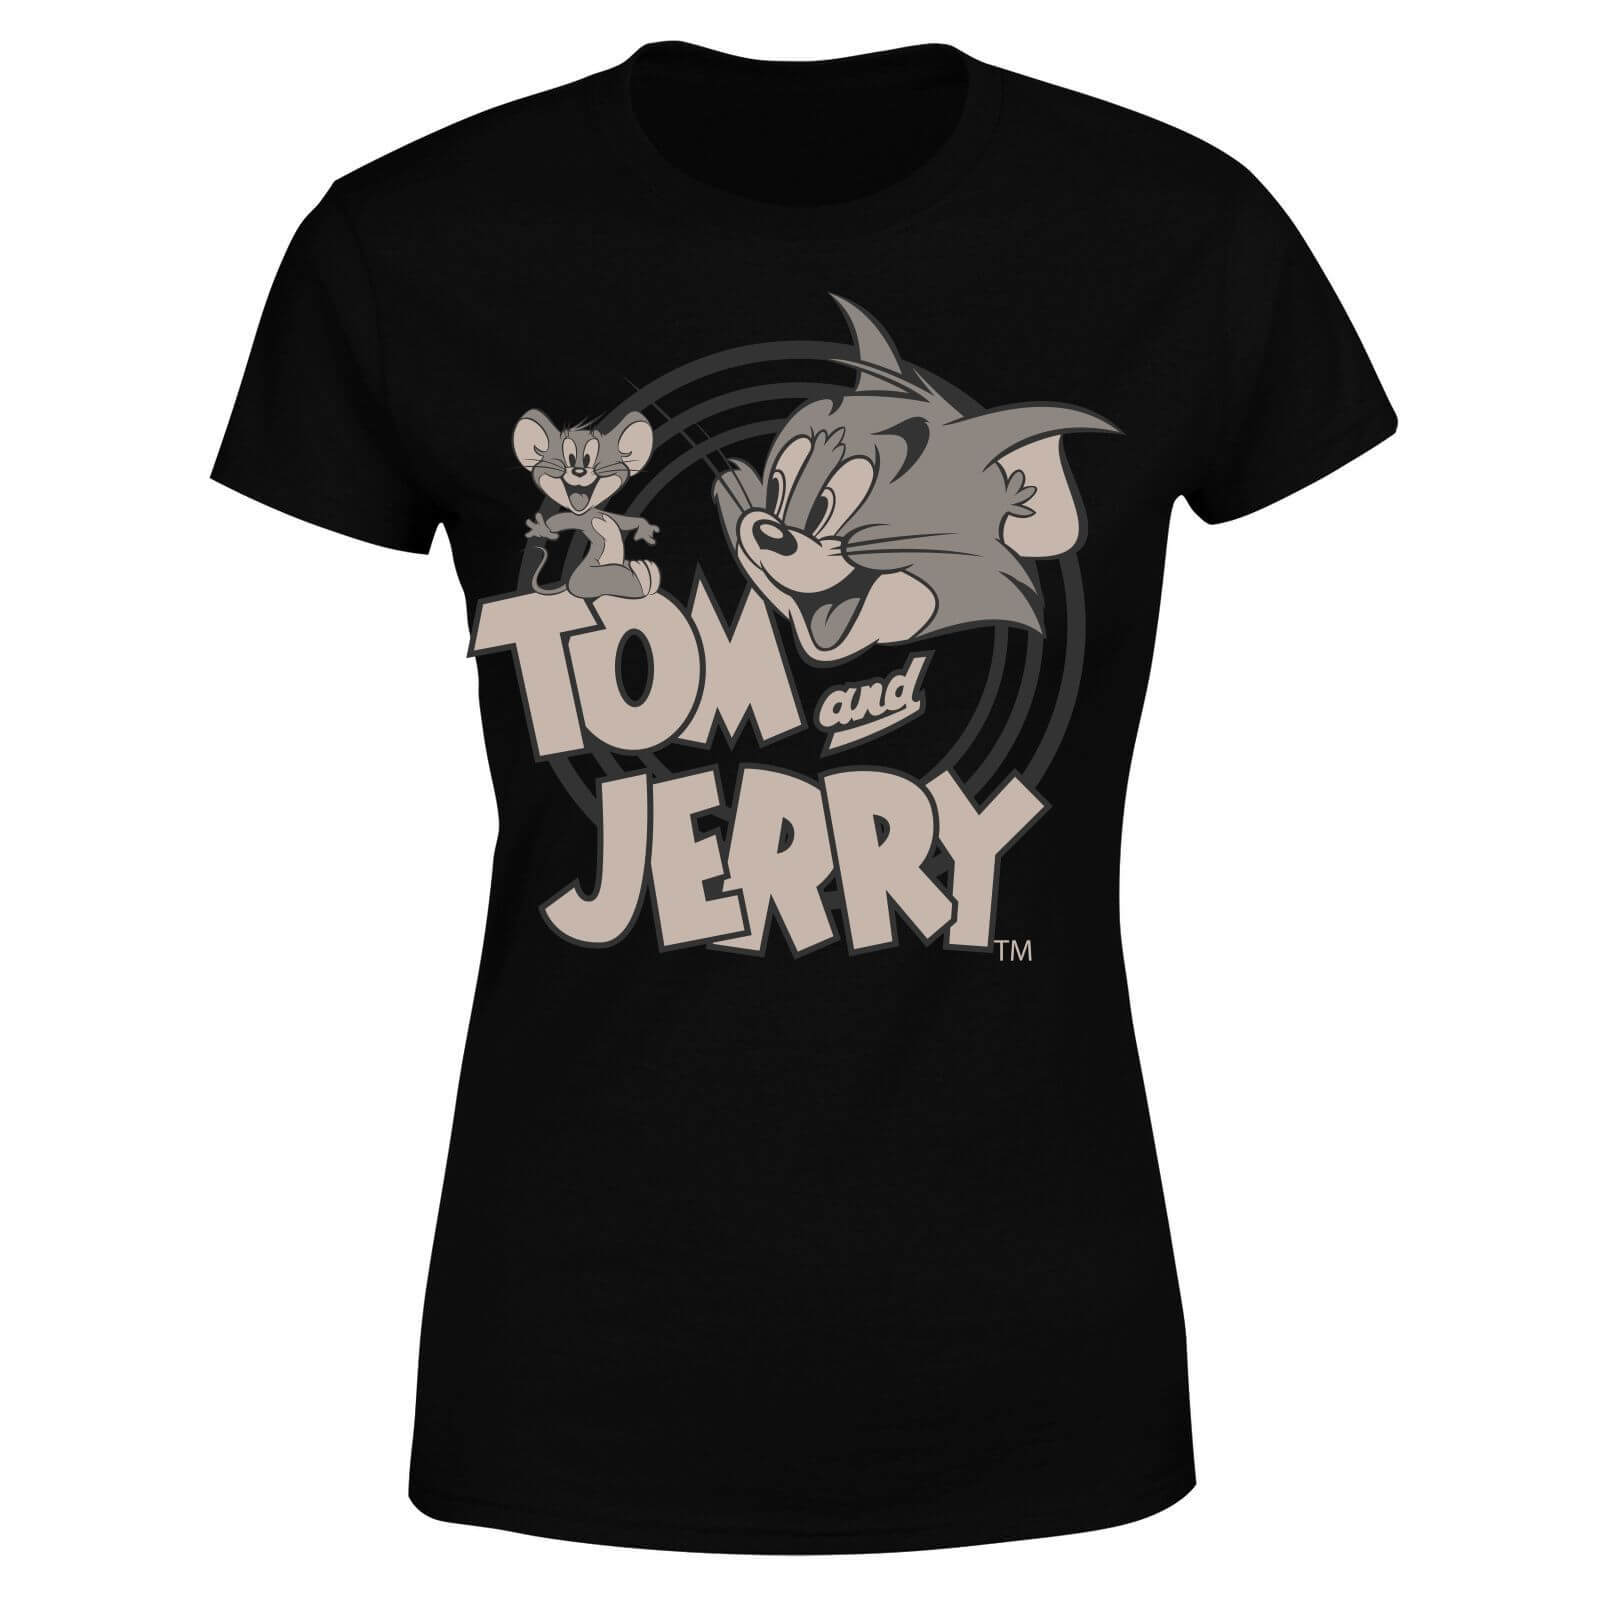 Tom & Jerry Circle Women's T-Shirt - Black - 4XL